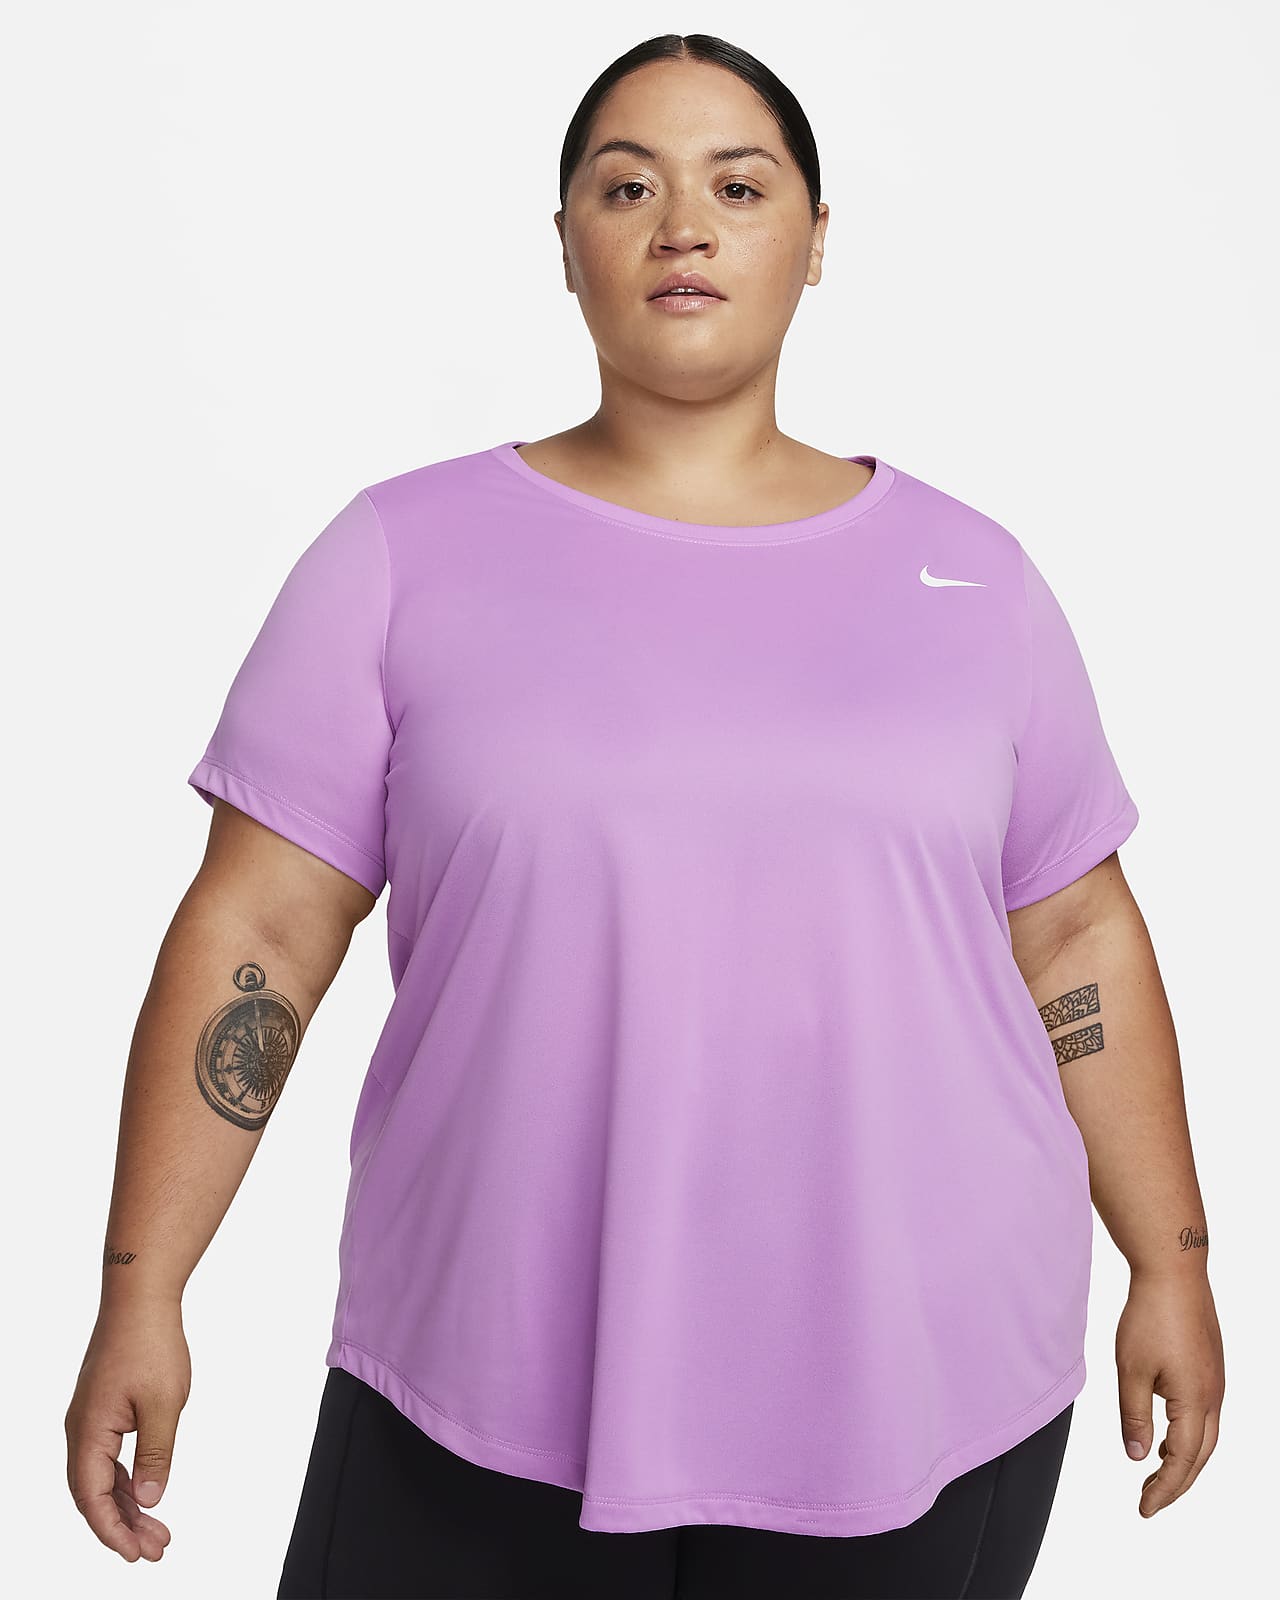 Nike Dri-FIT Women's T-Shirt (Plus Nike.com